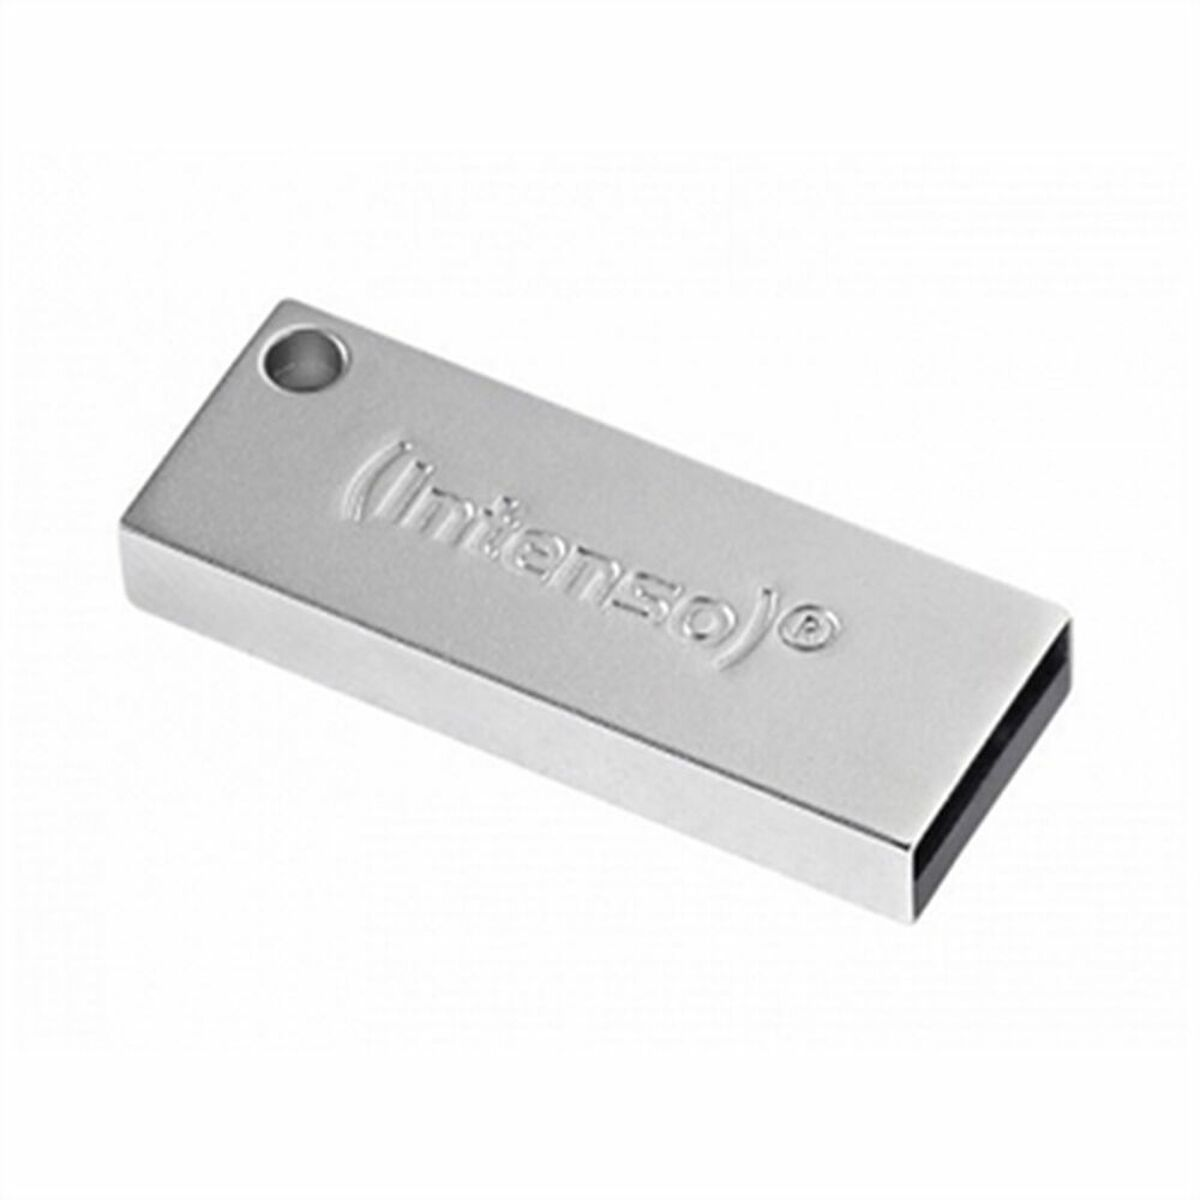 INTENSO 3534480 32GB PREMIUM 32 USB-Stick LINE GB) (Silber